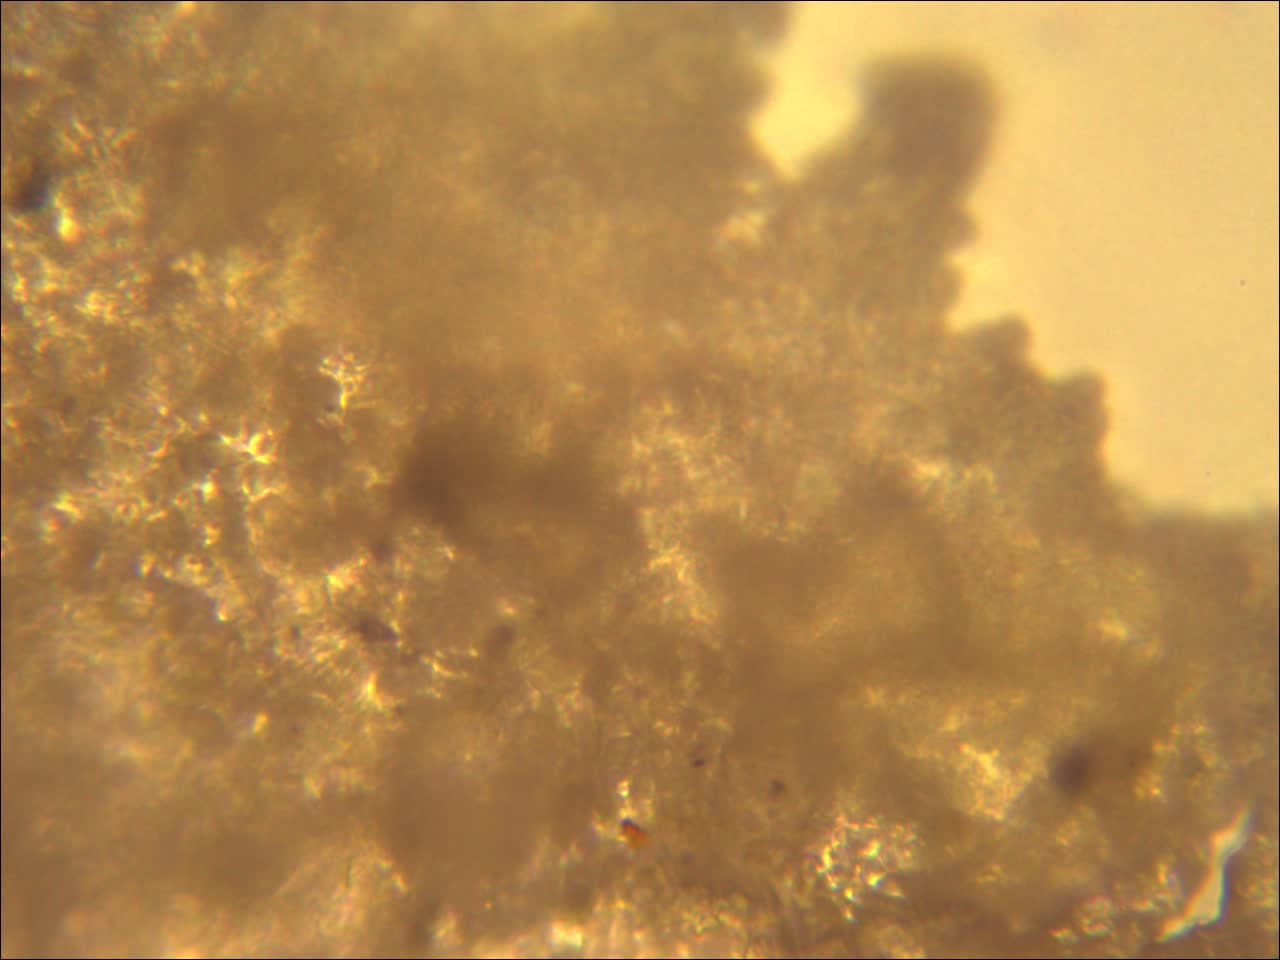 黑色残留物疑似为霉菌黄色残留物疑似为黄曲霉素黄曲霉素为真菌毒素